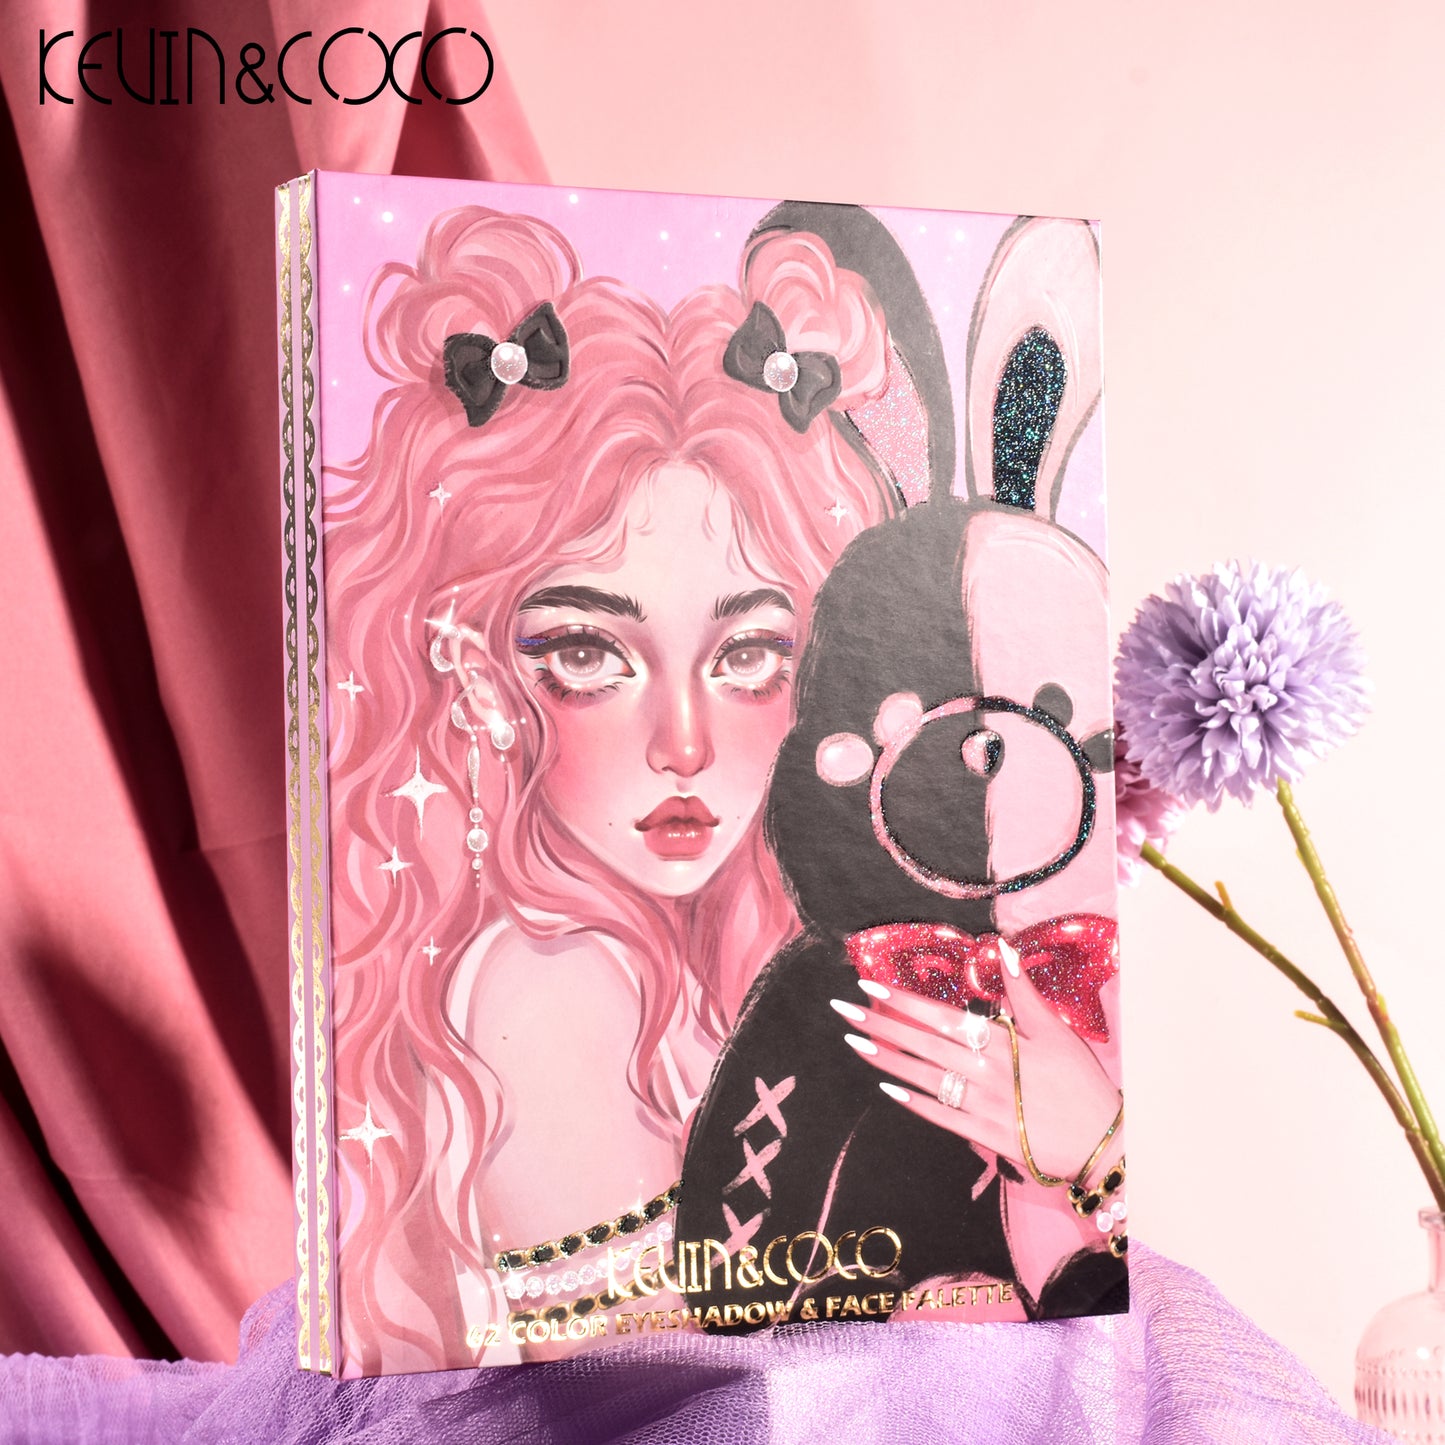 Set de Maquillaje Bunny Girl - Kevin&Coco